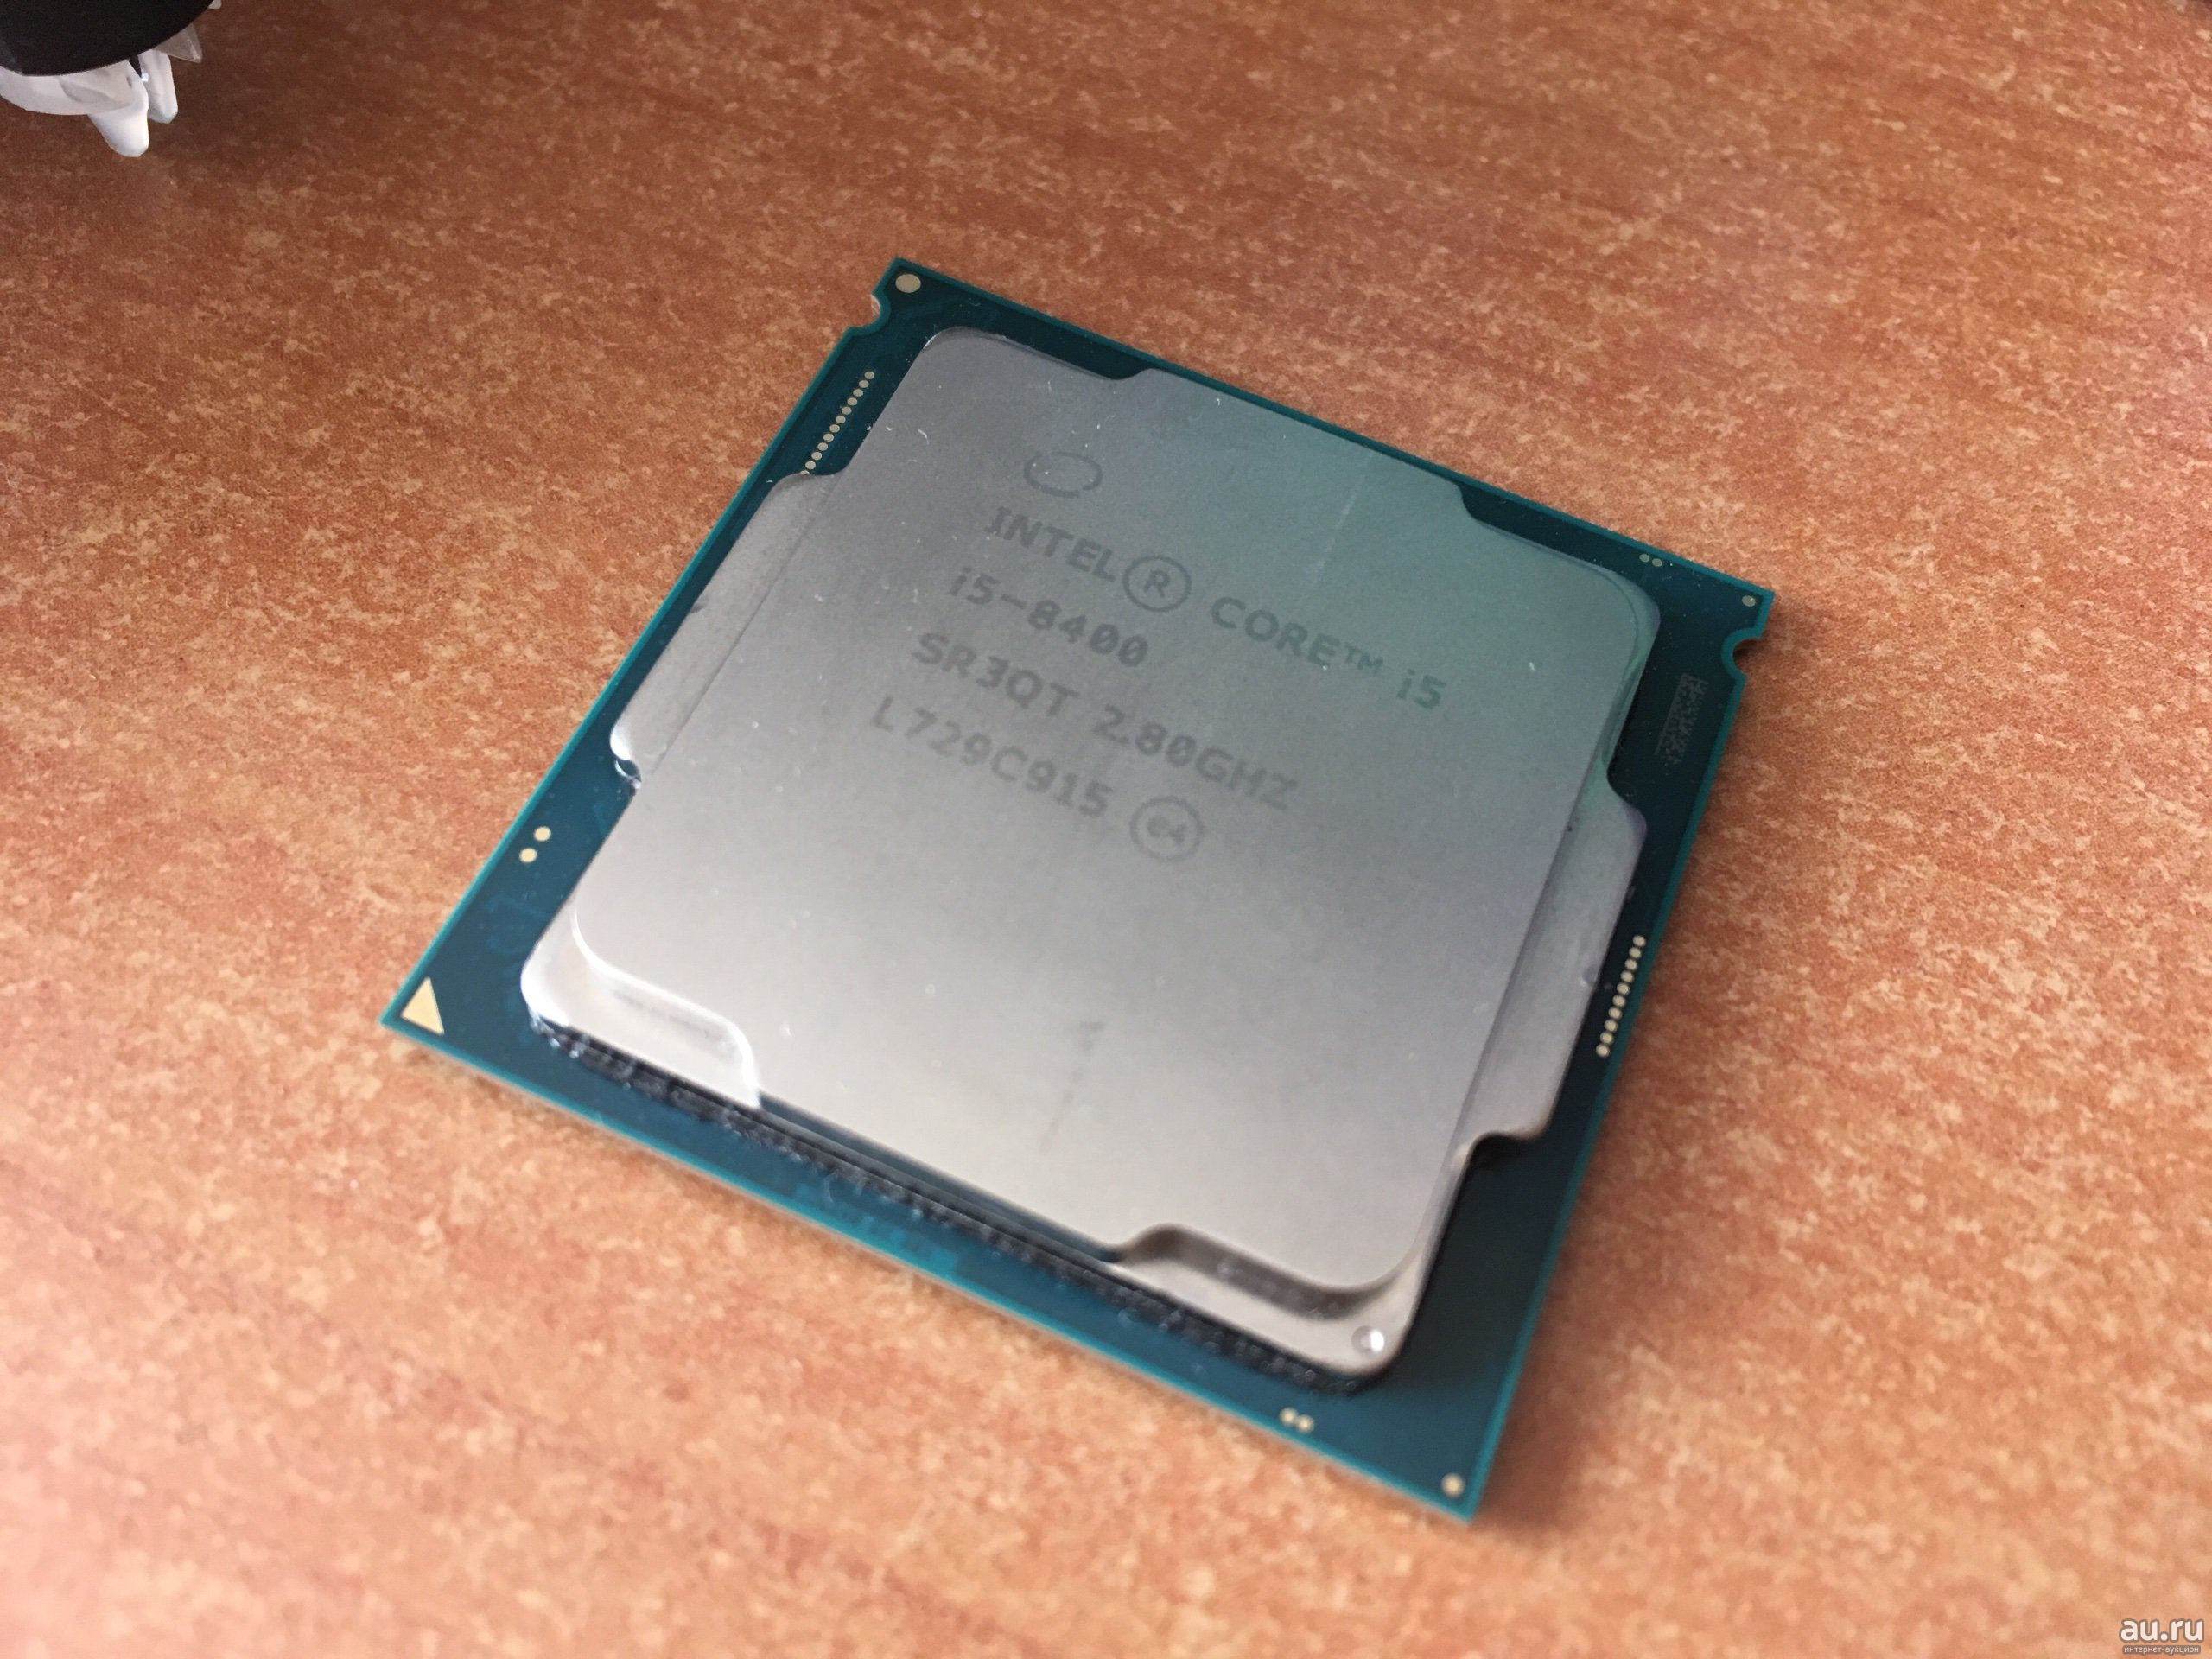 Интел коре i5 8400. I5 8400k. Процессор Intel Core i5-8400. Intel i5 8400. Intel Core i3 2110.